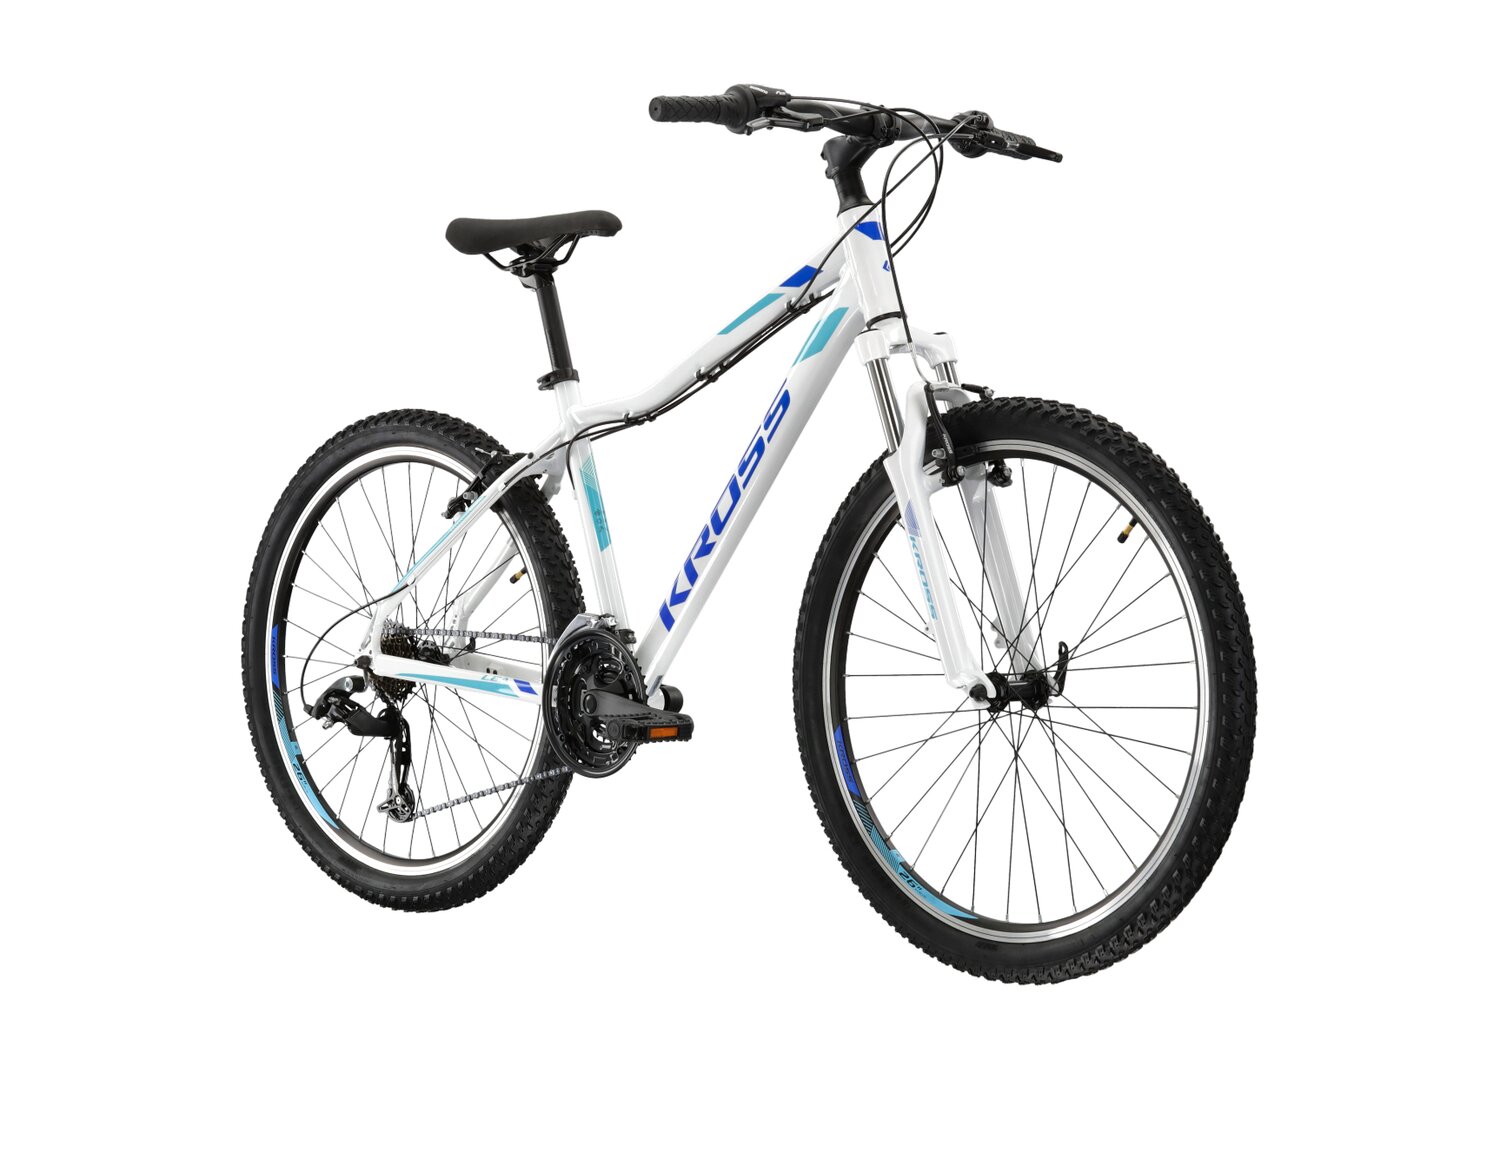 Damski rower górski MTB Woman Kross Lea 1.1 SR na aluminiowej ramie w kolorze białym wyposażony w osprzęt Sunrace oraz Shimano 